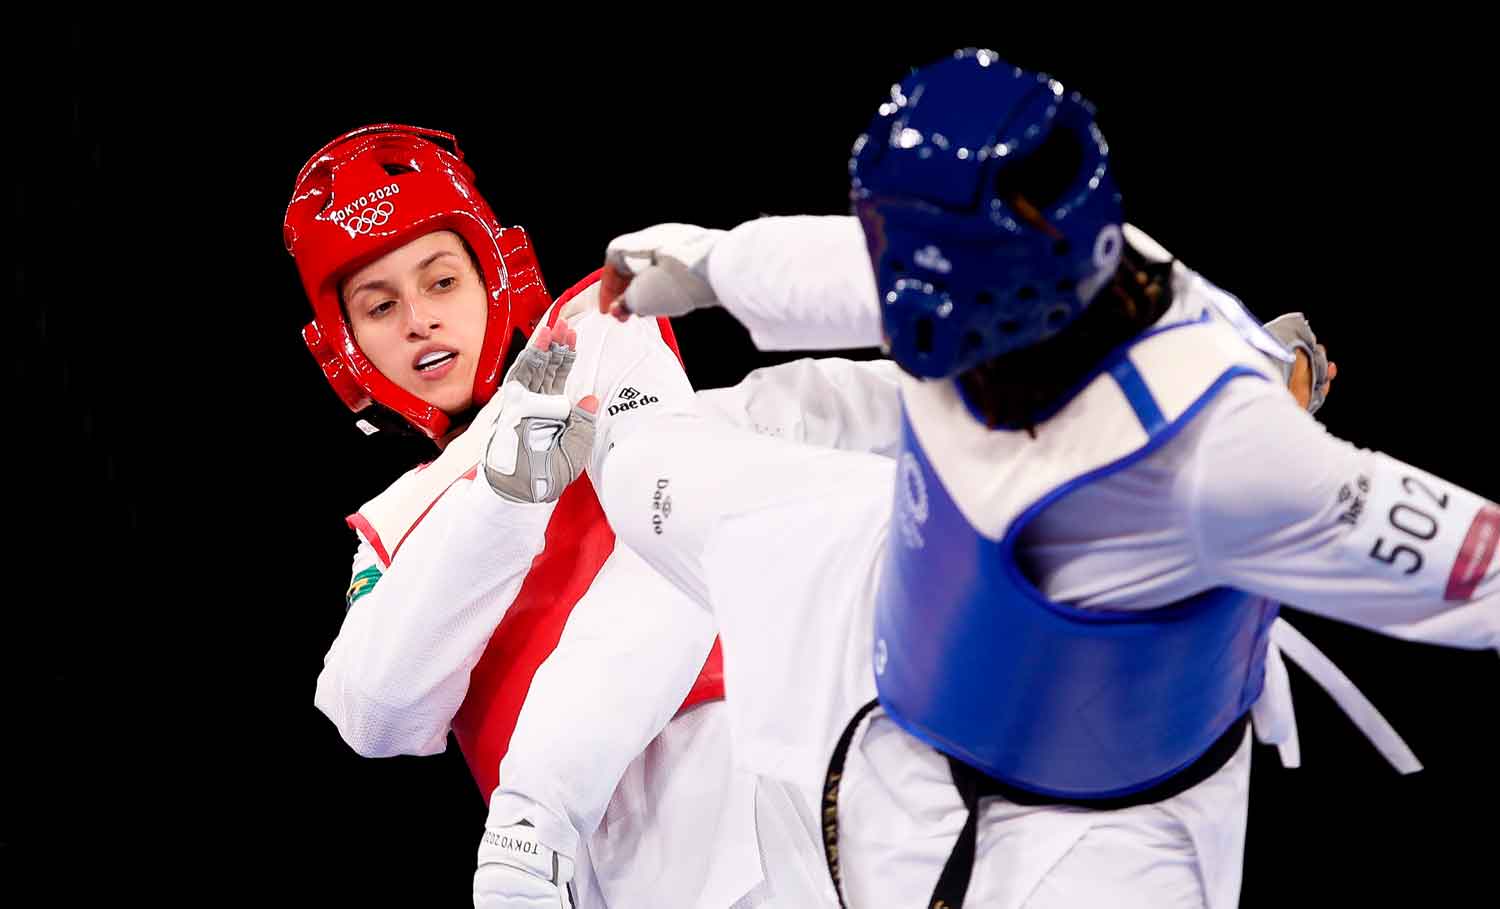 Milena Titoneli inicia ciclo olímpico Paris 2024 com esperança de medalha no taekwondo